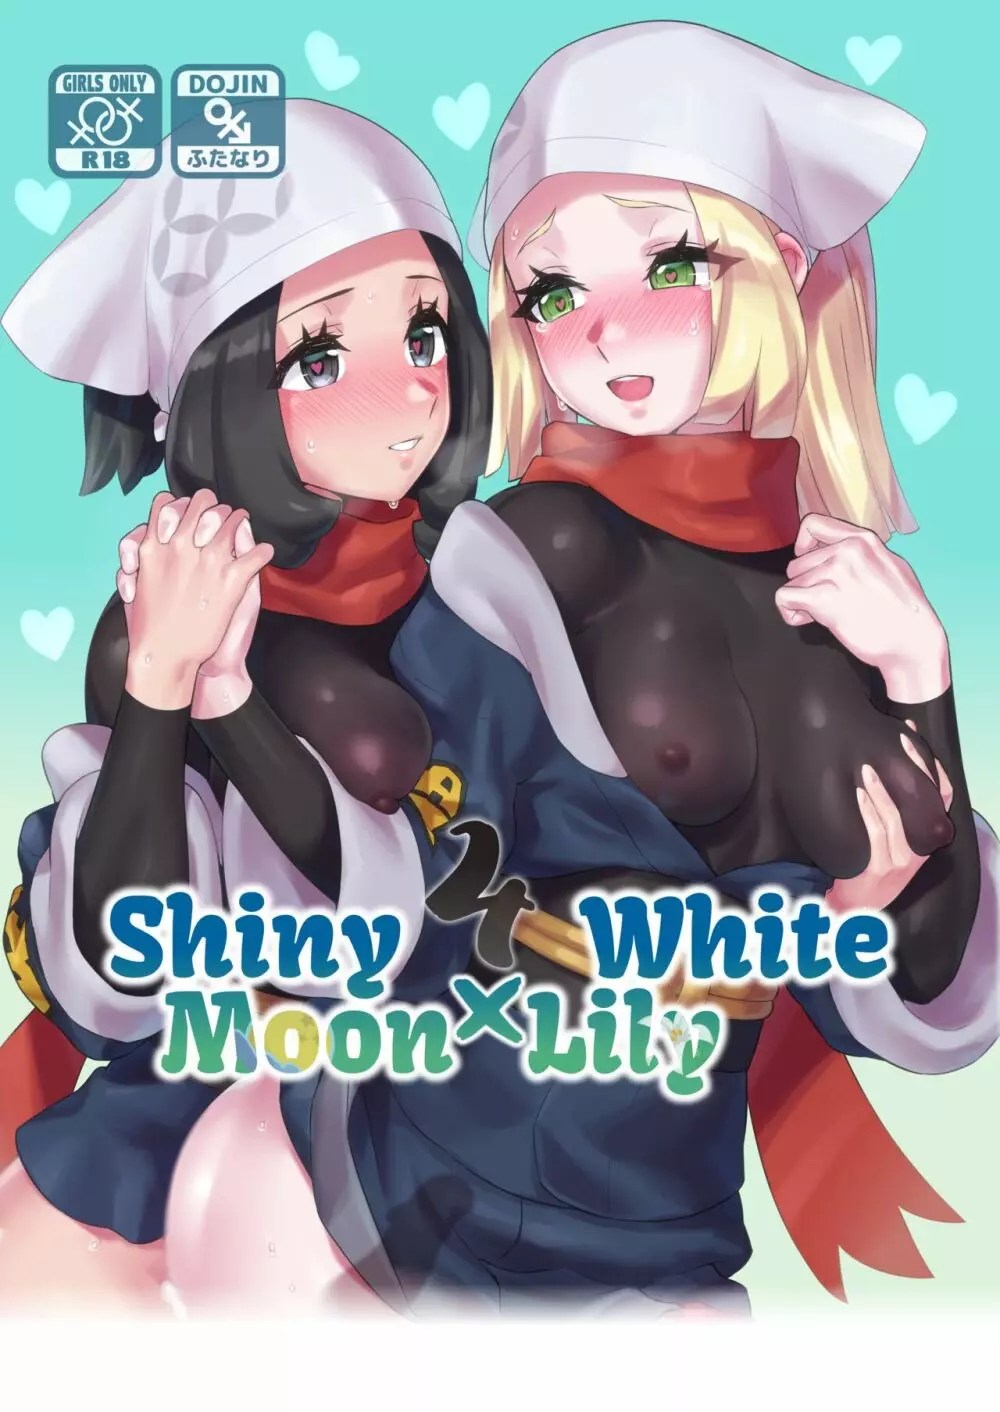 ShinyMoon x WhiteLily 4